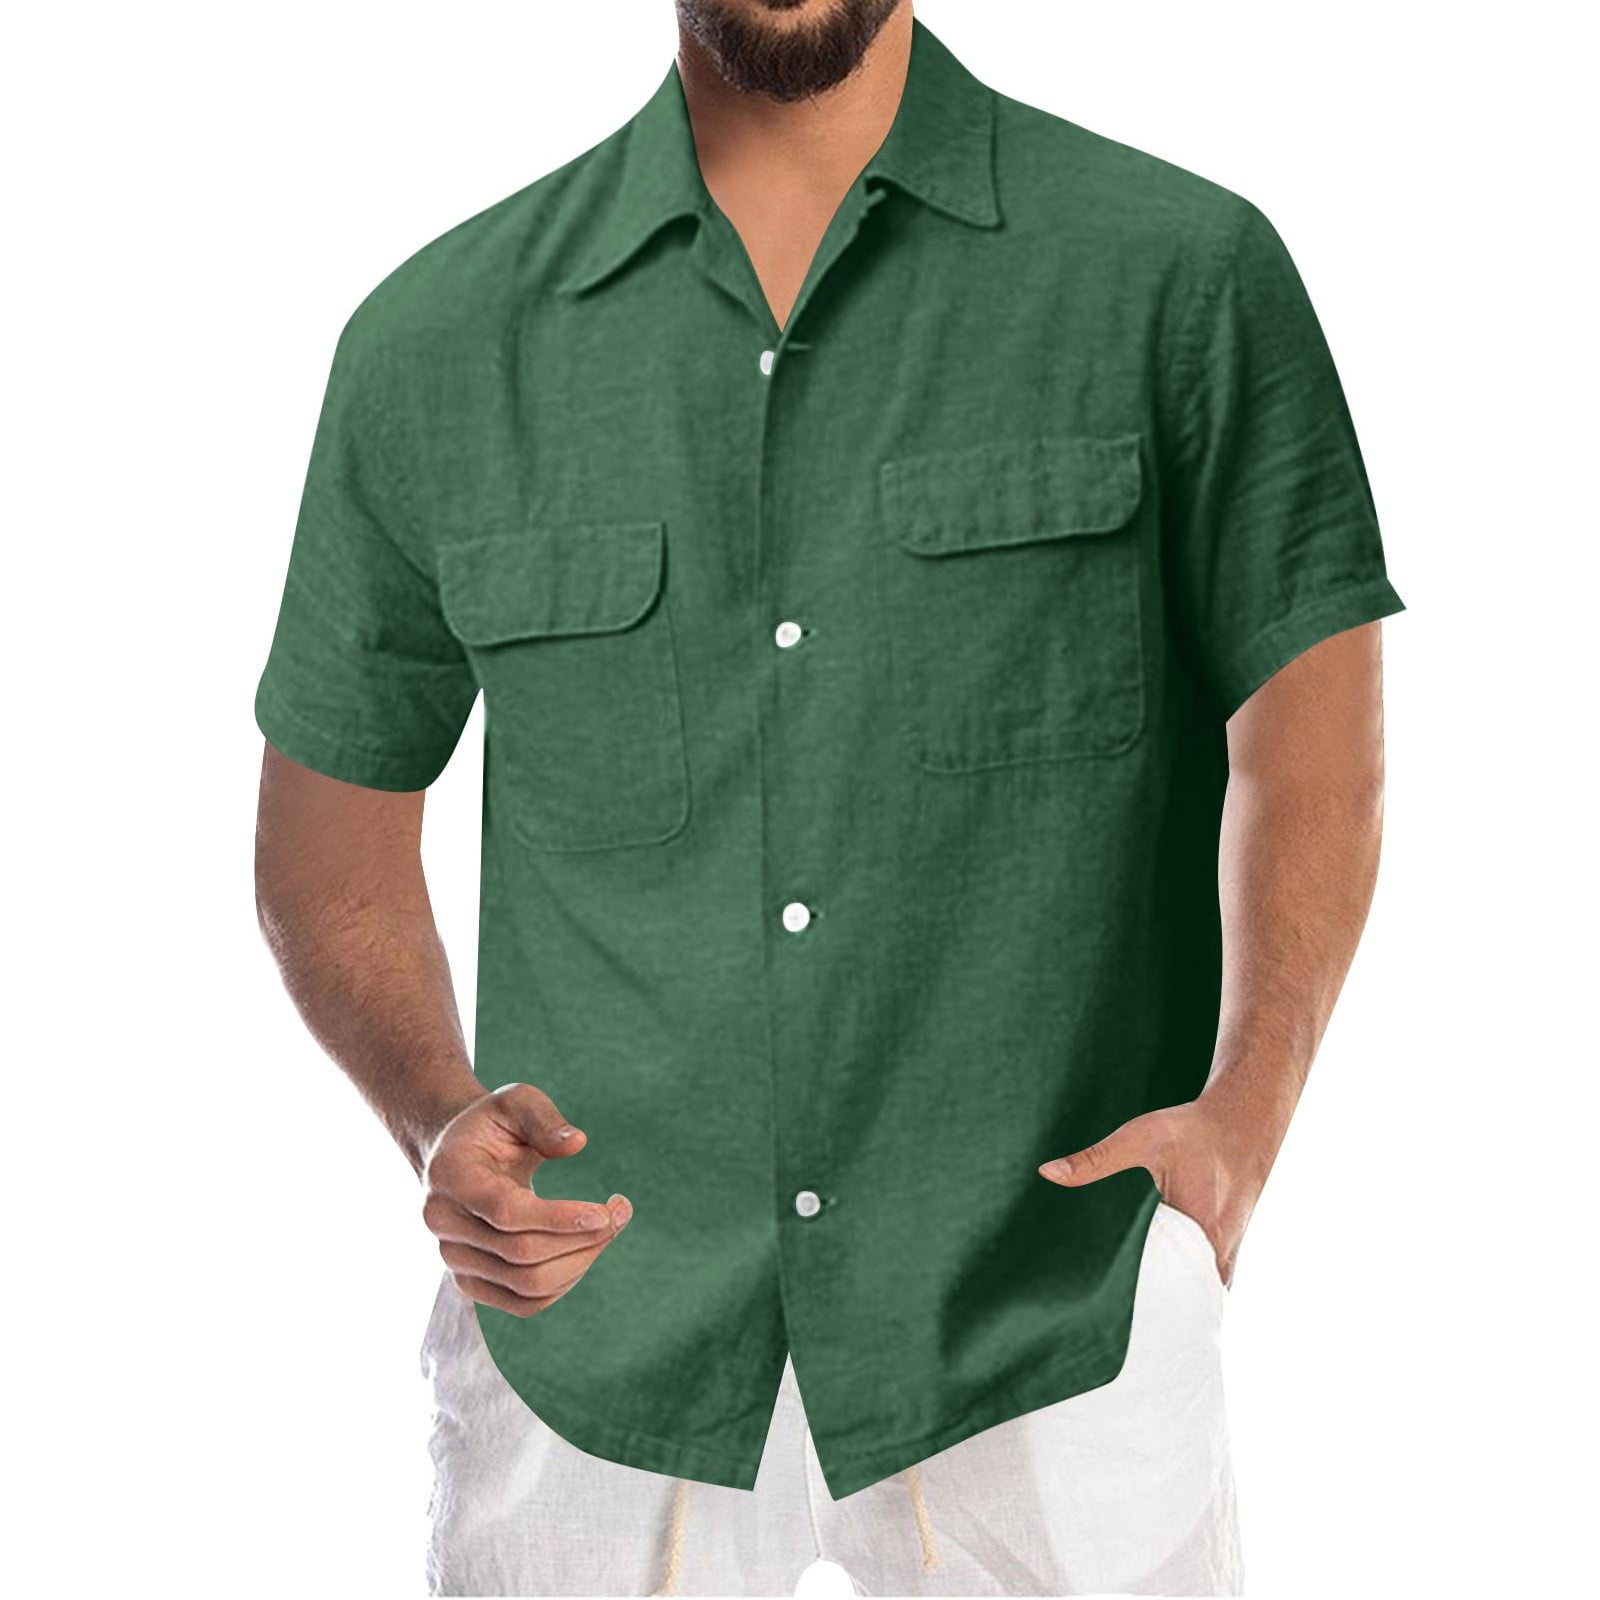 B91xZ Men's Dress Shirts Men Fashion Casual Top Shirt Solid Color